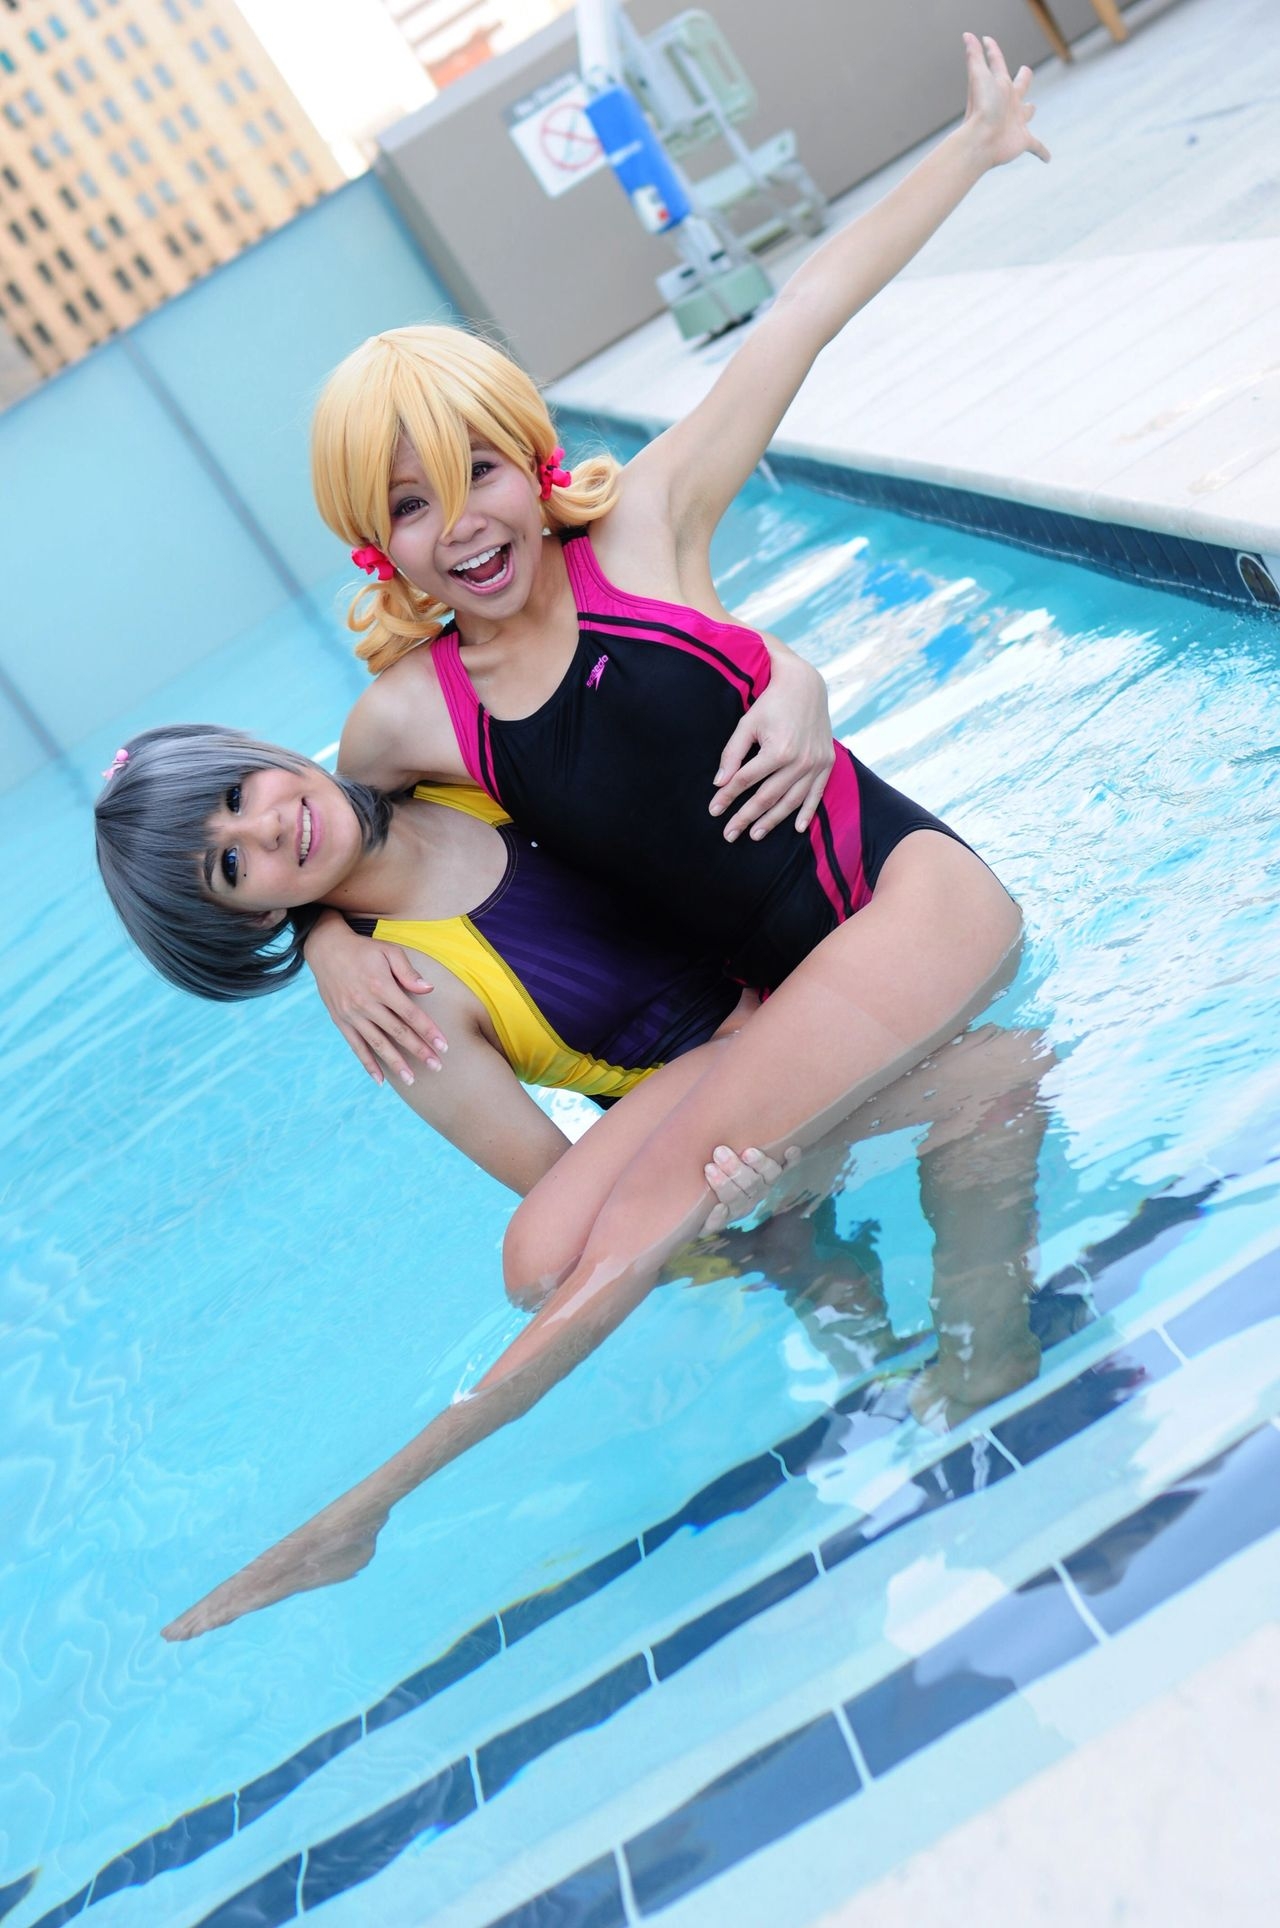 Iwatobi Swim Club (Free!) cosplay! (non yaoi) 19